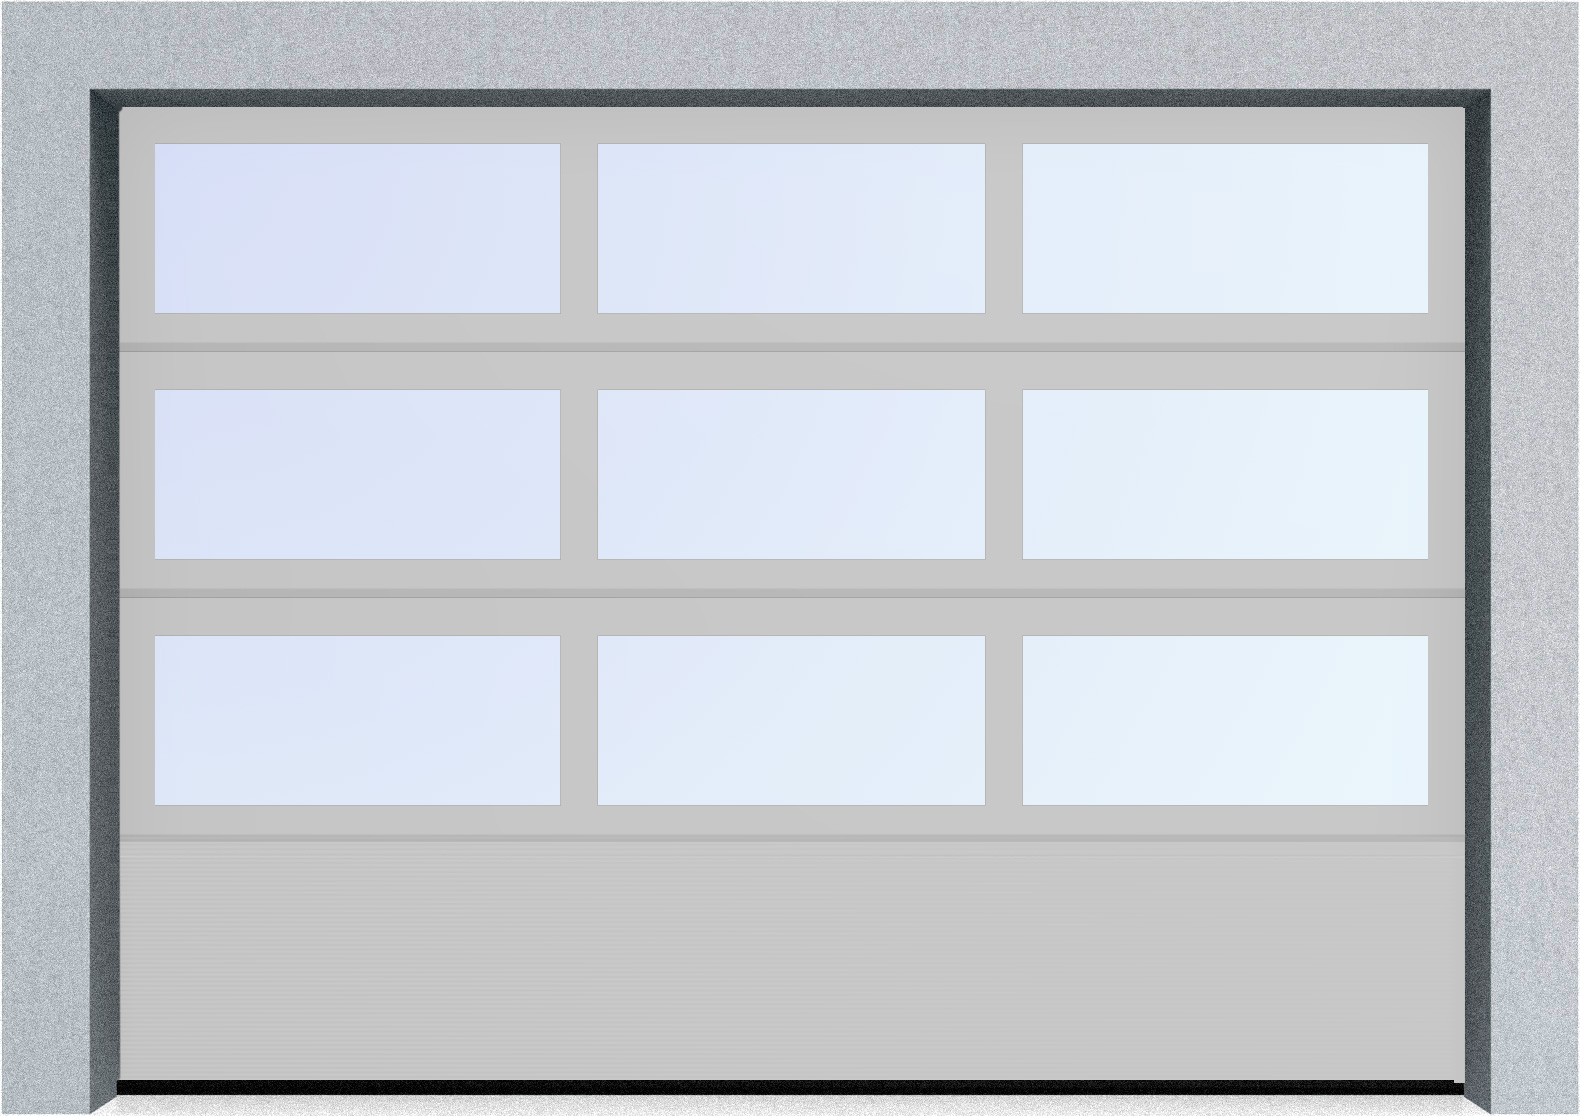  Автоматические секционные панорамные ворота серии AluTrend с комбинированным типом полотна (АЛПС) 6500х4500 S-гофр, Микроволна стандартные цвета, фото 15 